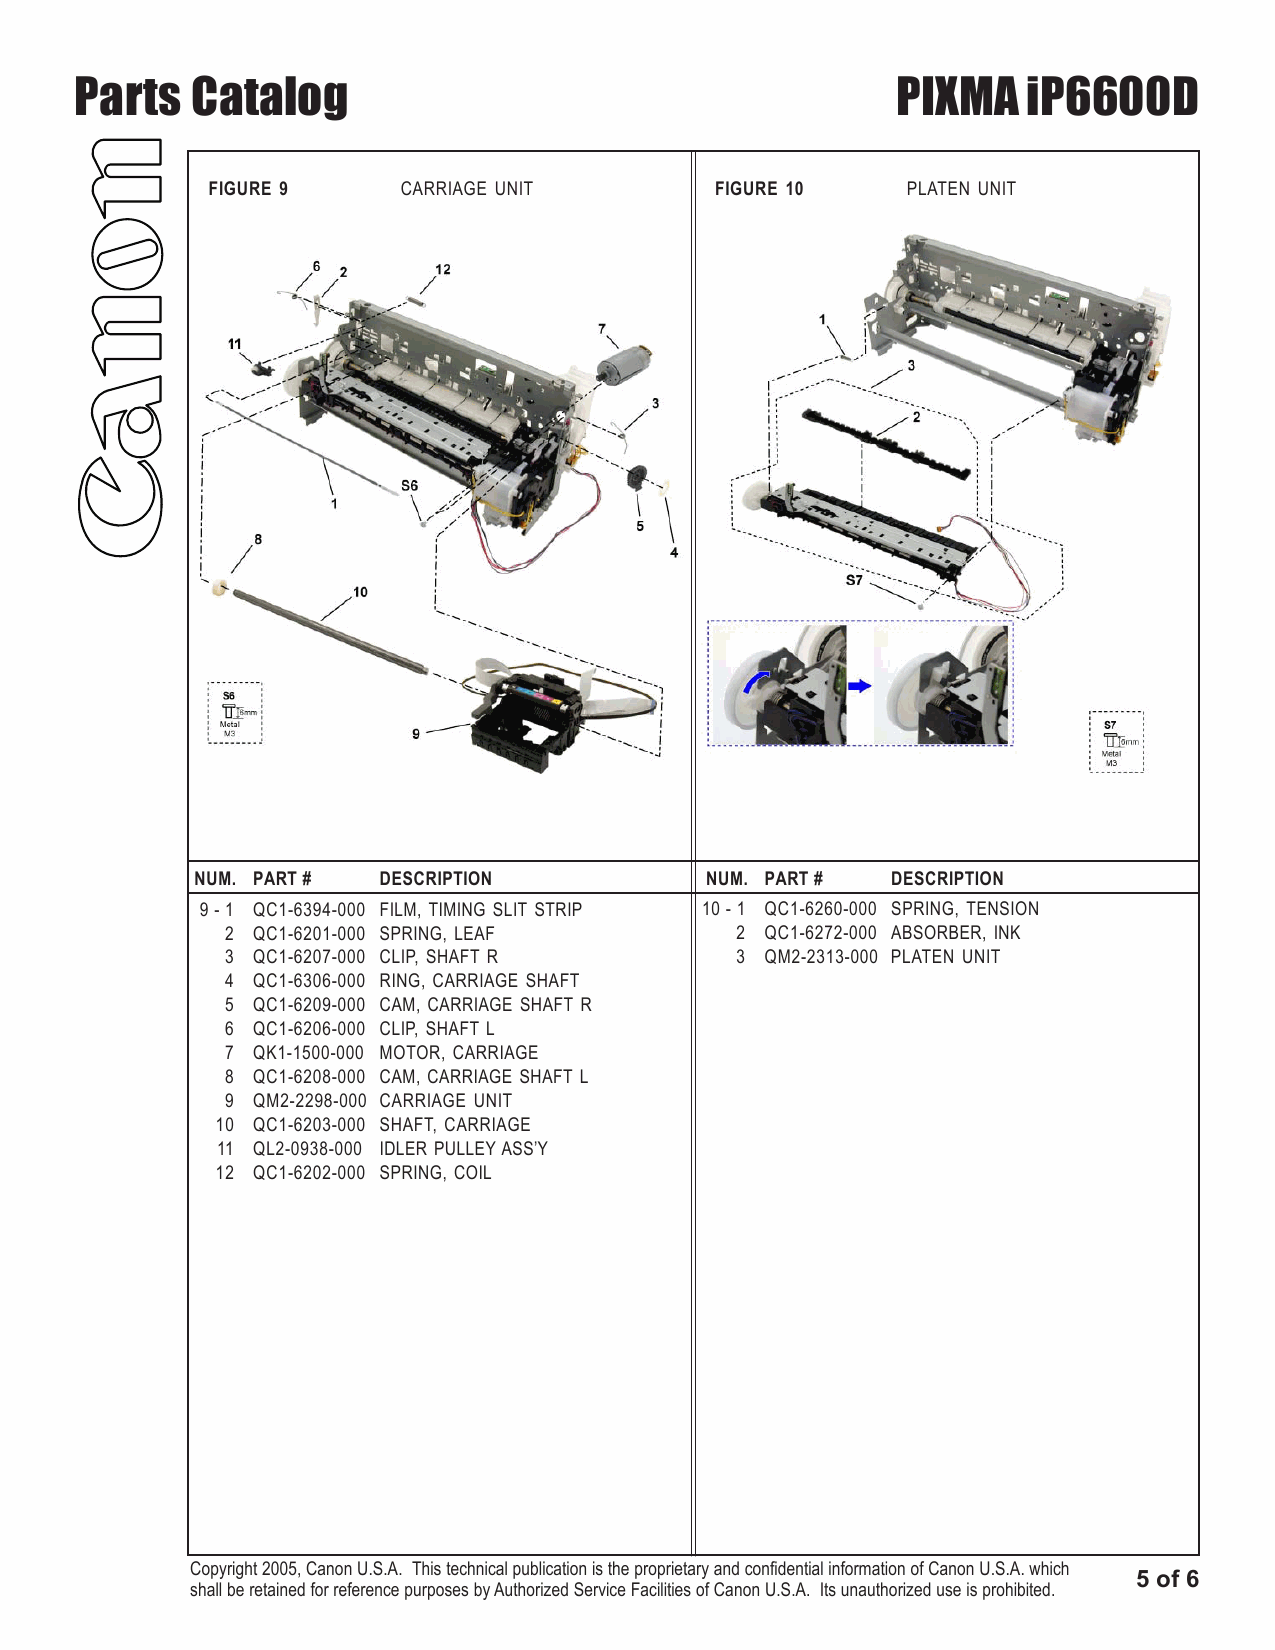 Canon PIXMA iP6600D Parts Catalog-6